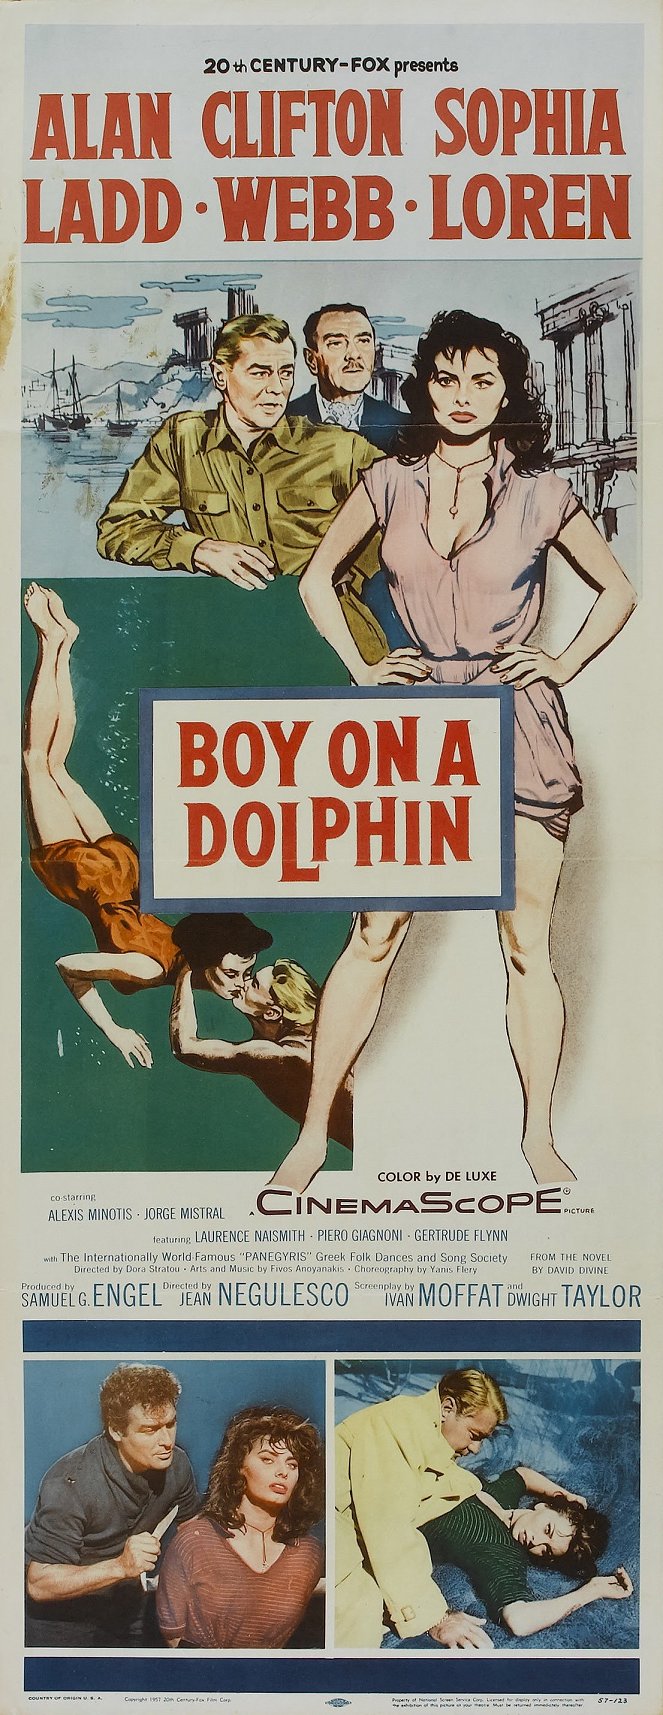 Poika delfiinin selässä - Julisteet